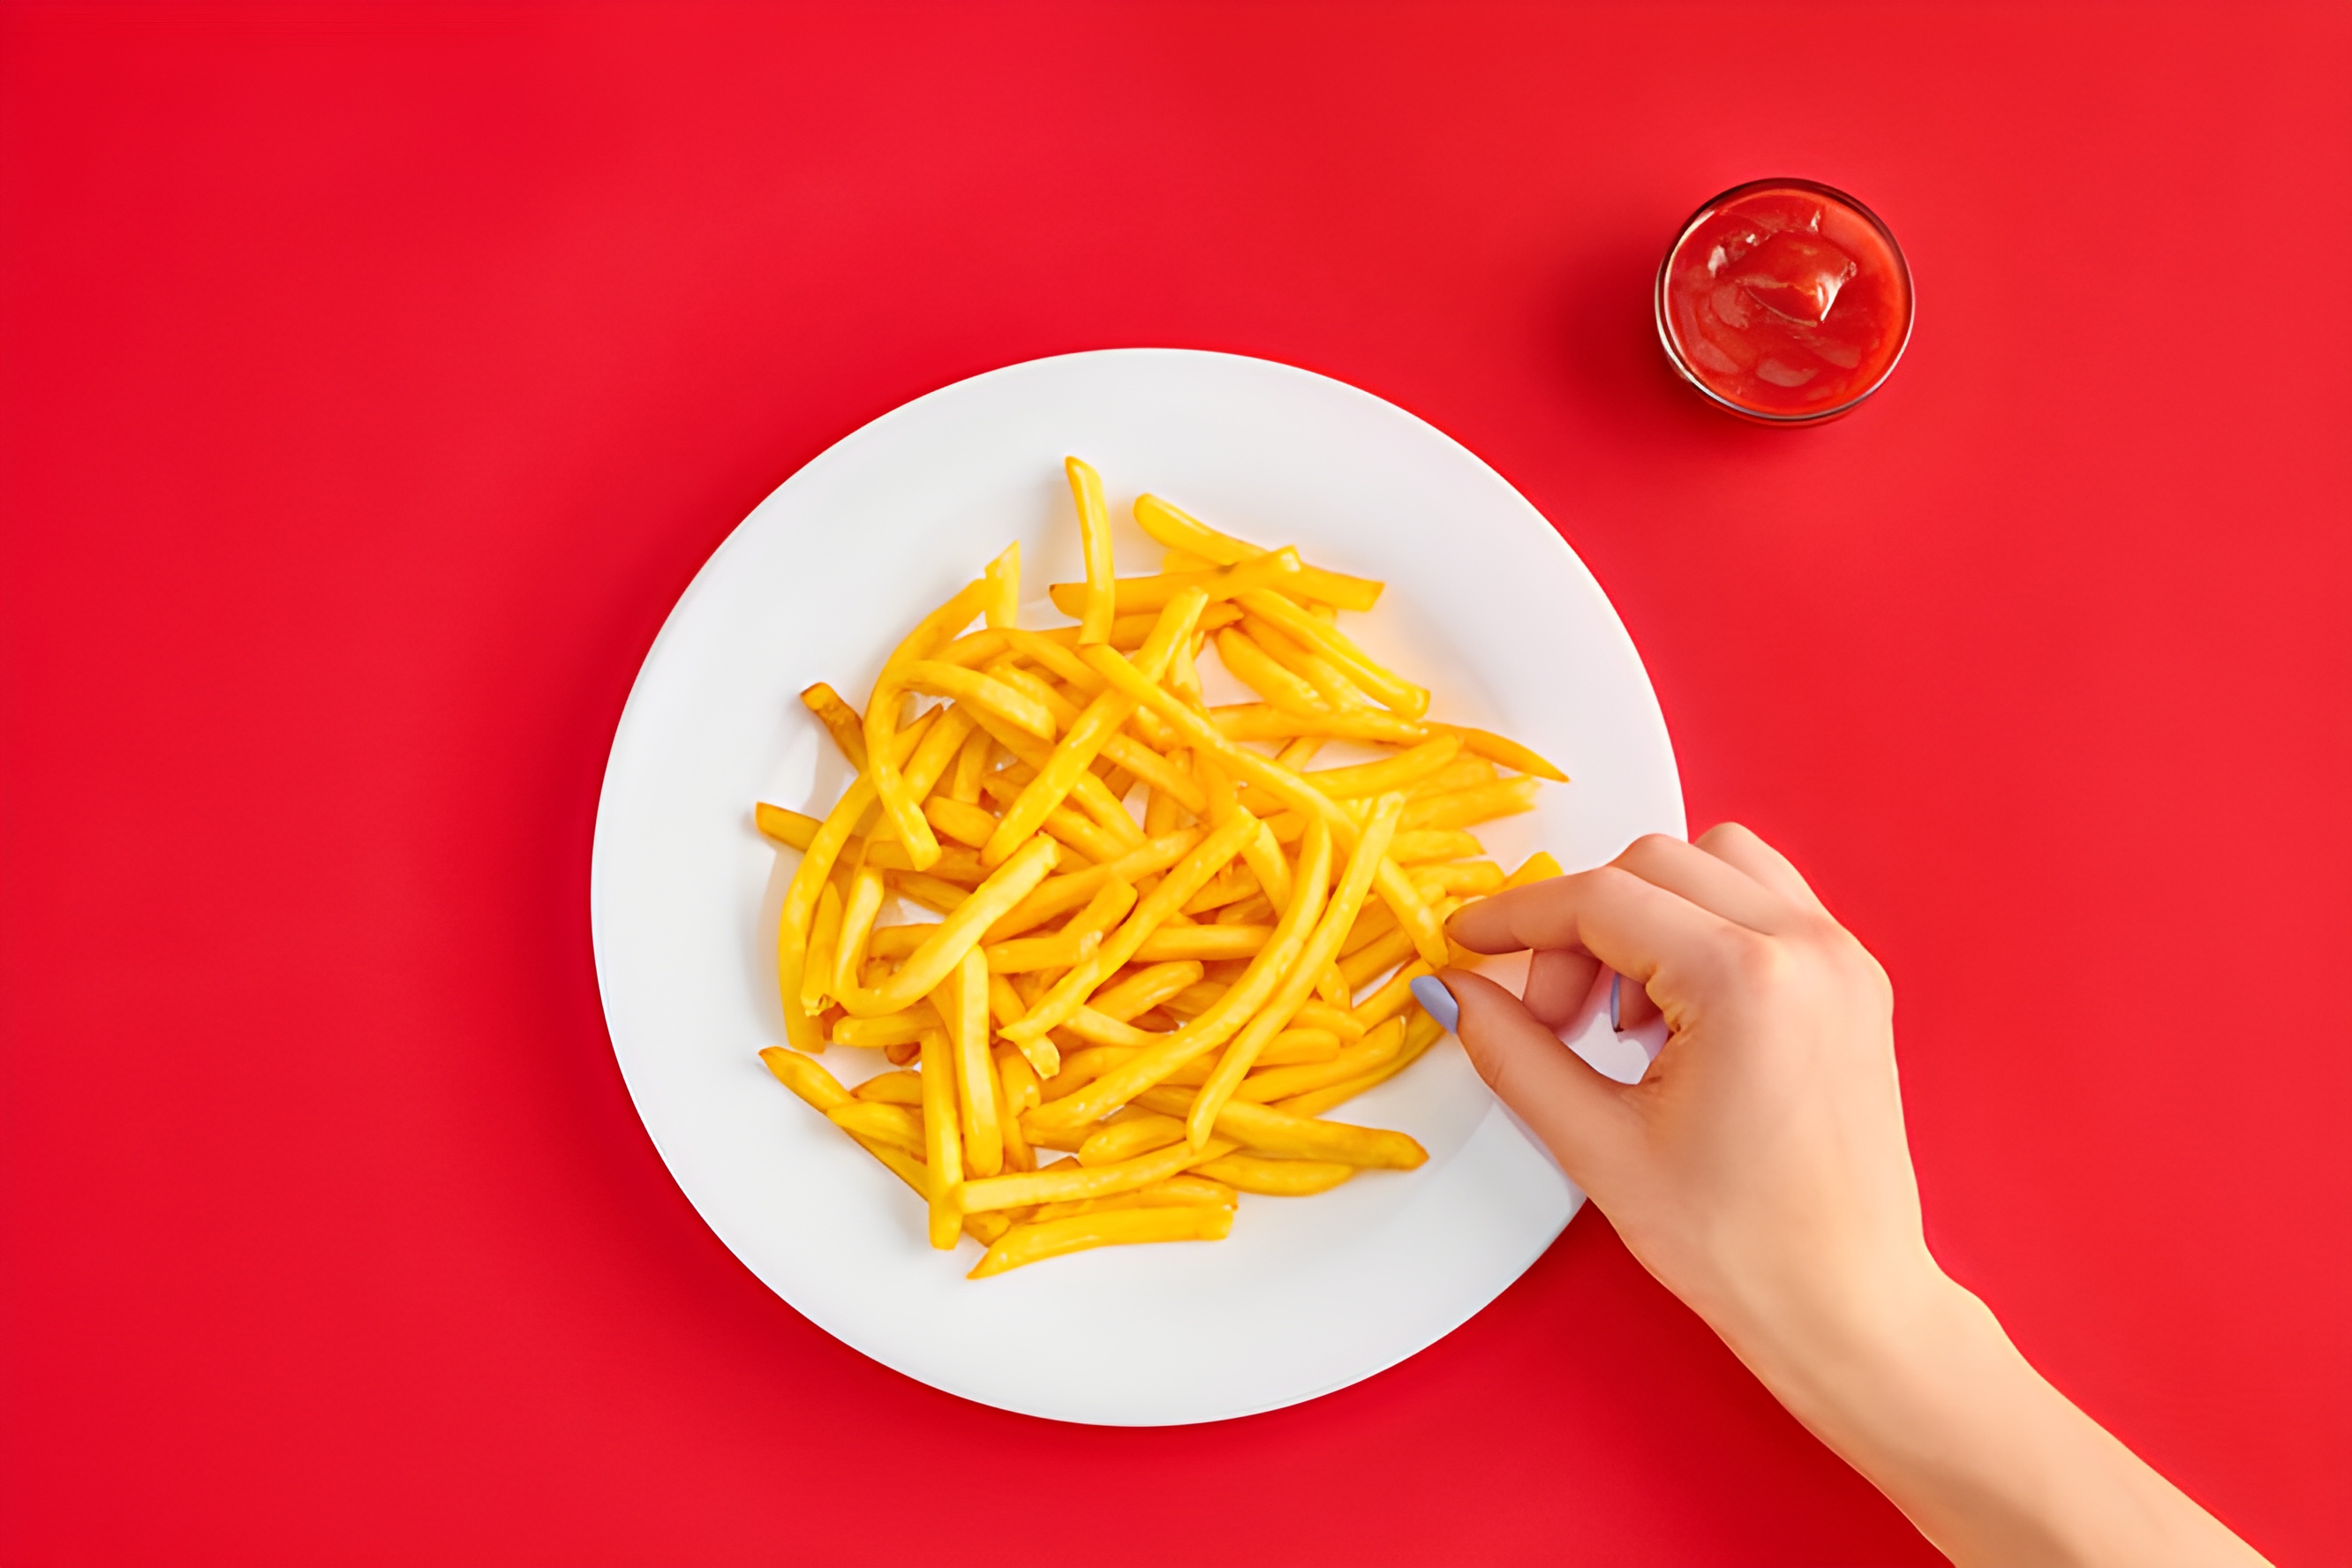 produkty spożywcze, których należy unikać podczas leczenia raka: frytki i ketchup